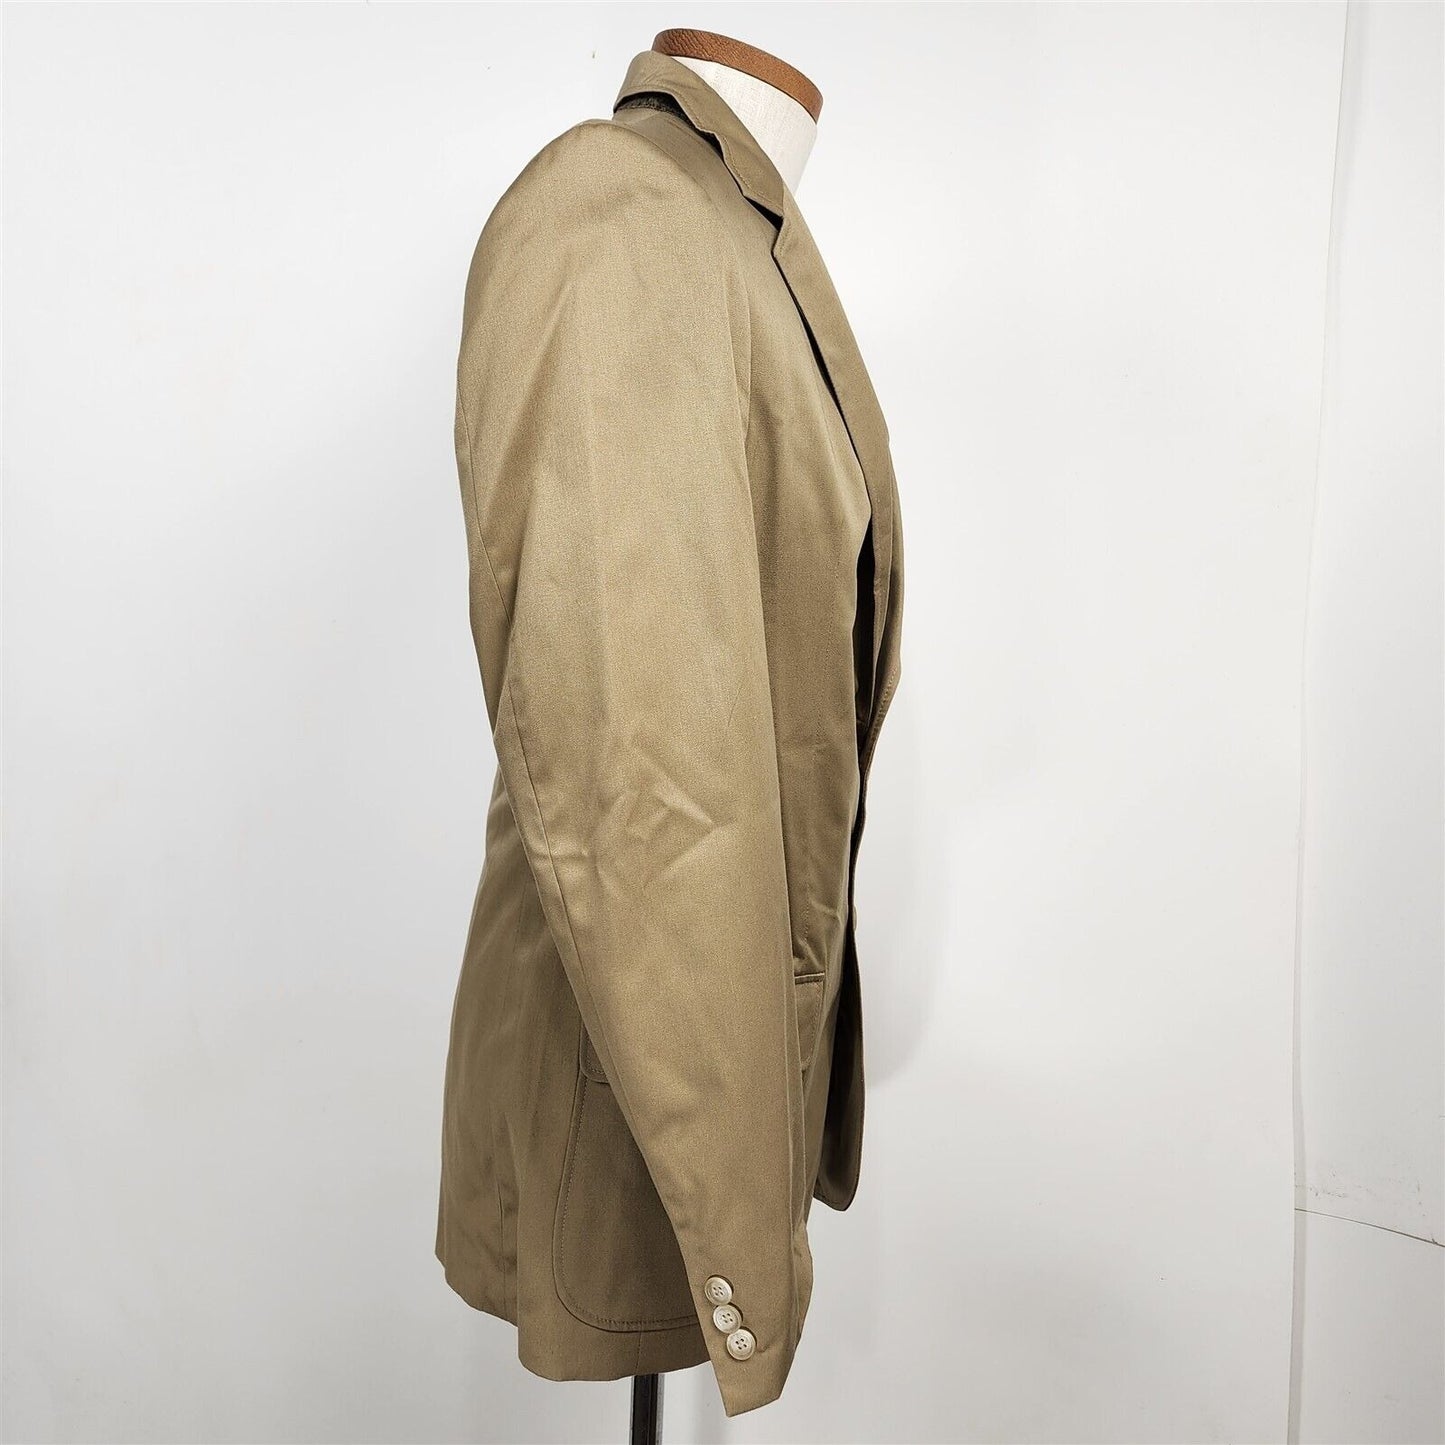 Vintage Jeffrey Allan Tan Beige 2 Button Suit Jacket Sport Coat Blazer Size 39L